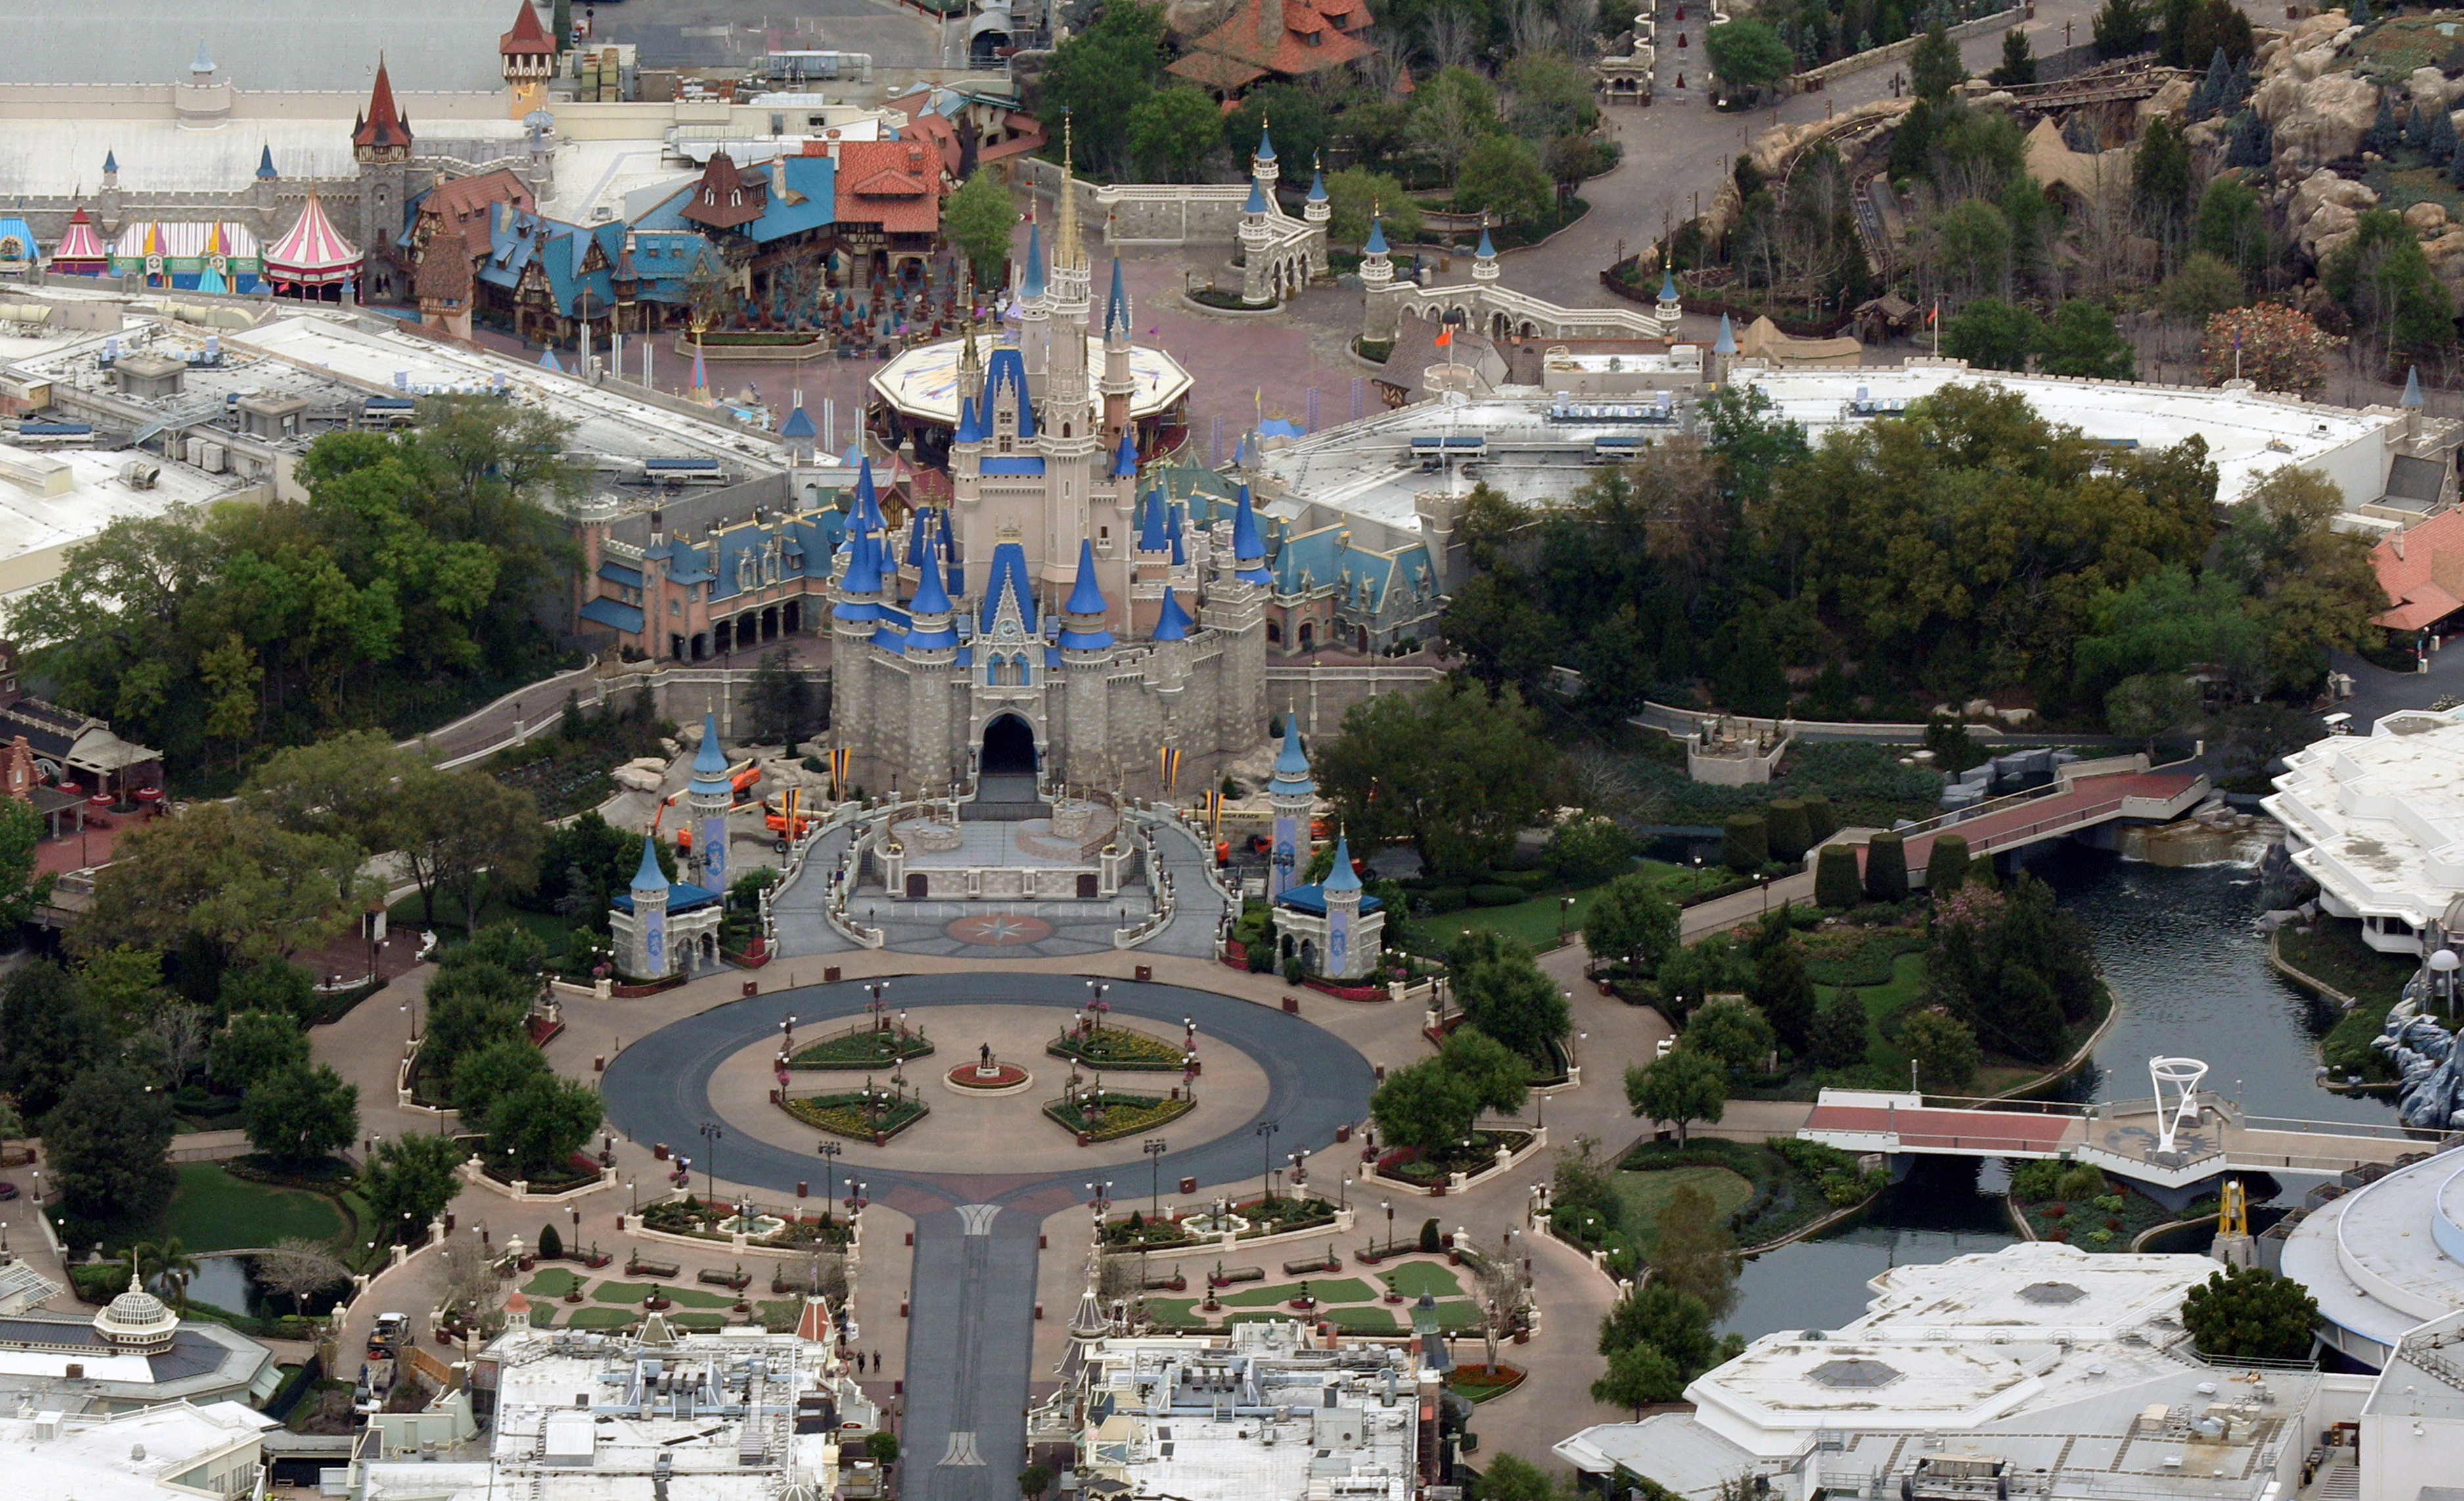 Cinderella Castle, uno de los lugares más famosos del parque Disney's Magic Kingdom, en Orlando, Florida. (REUTERS/Gregg Newton)